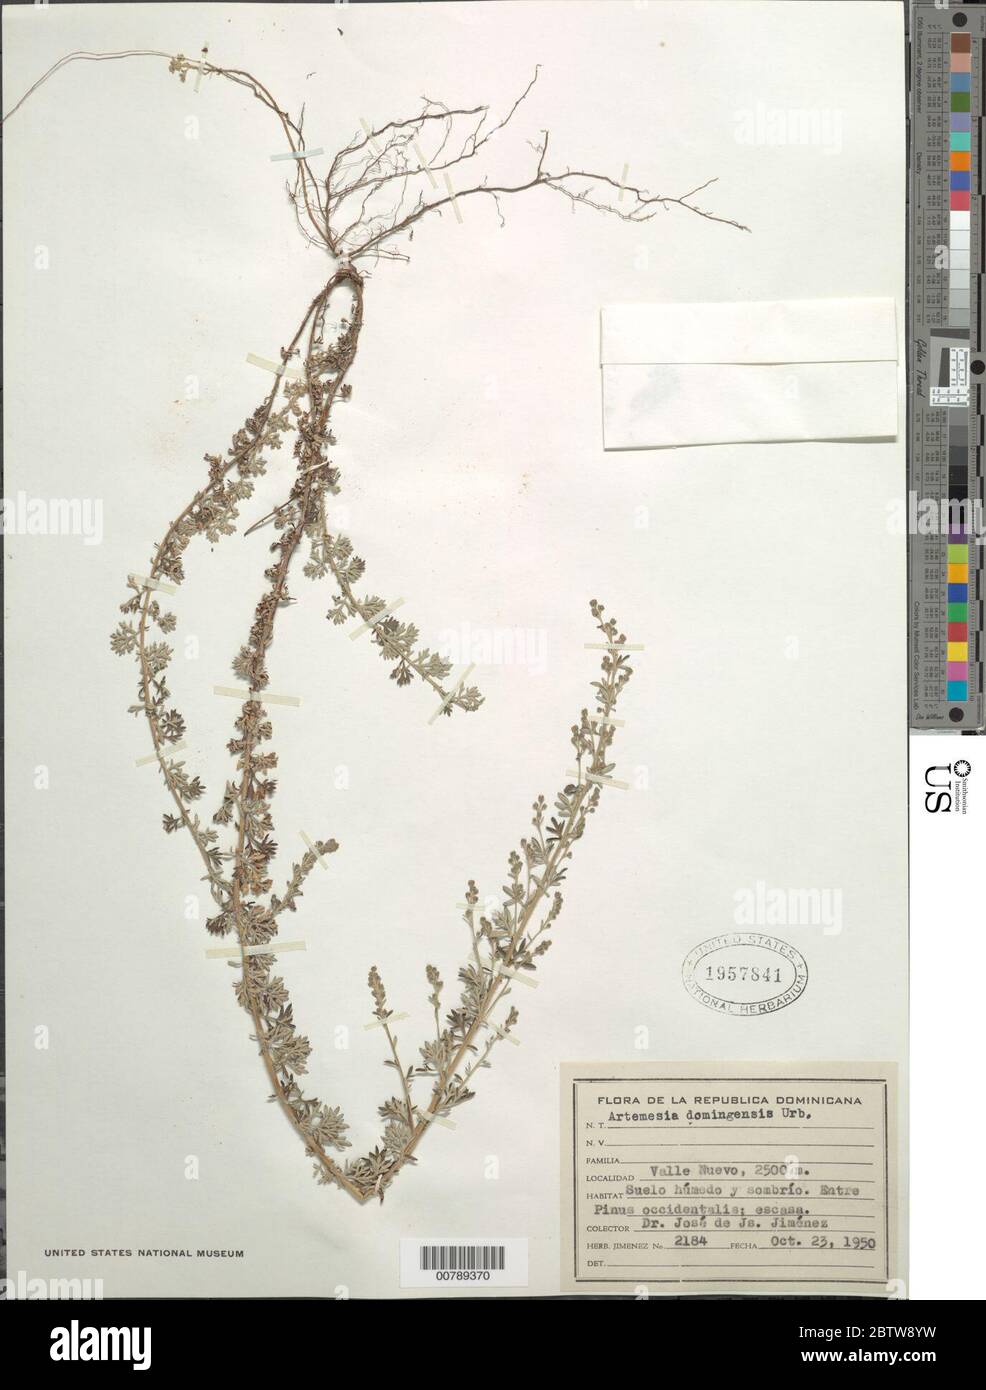 Artemisia domingensis Urb. Stock Photo